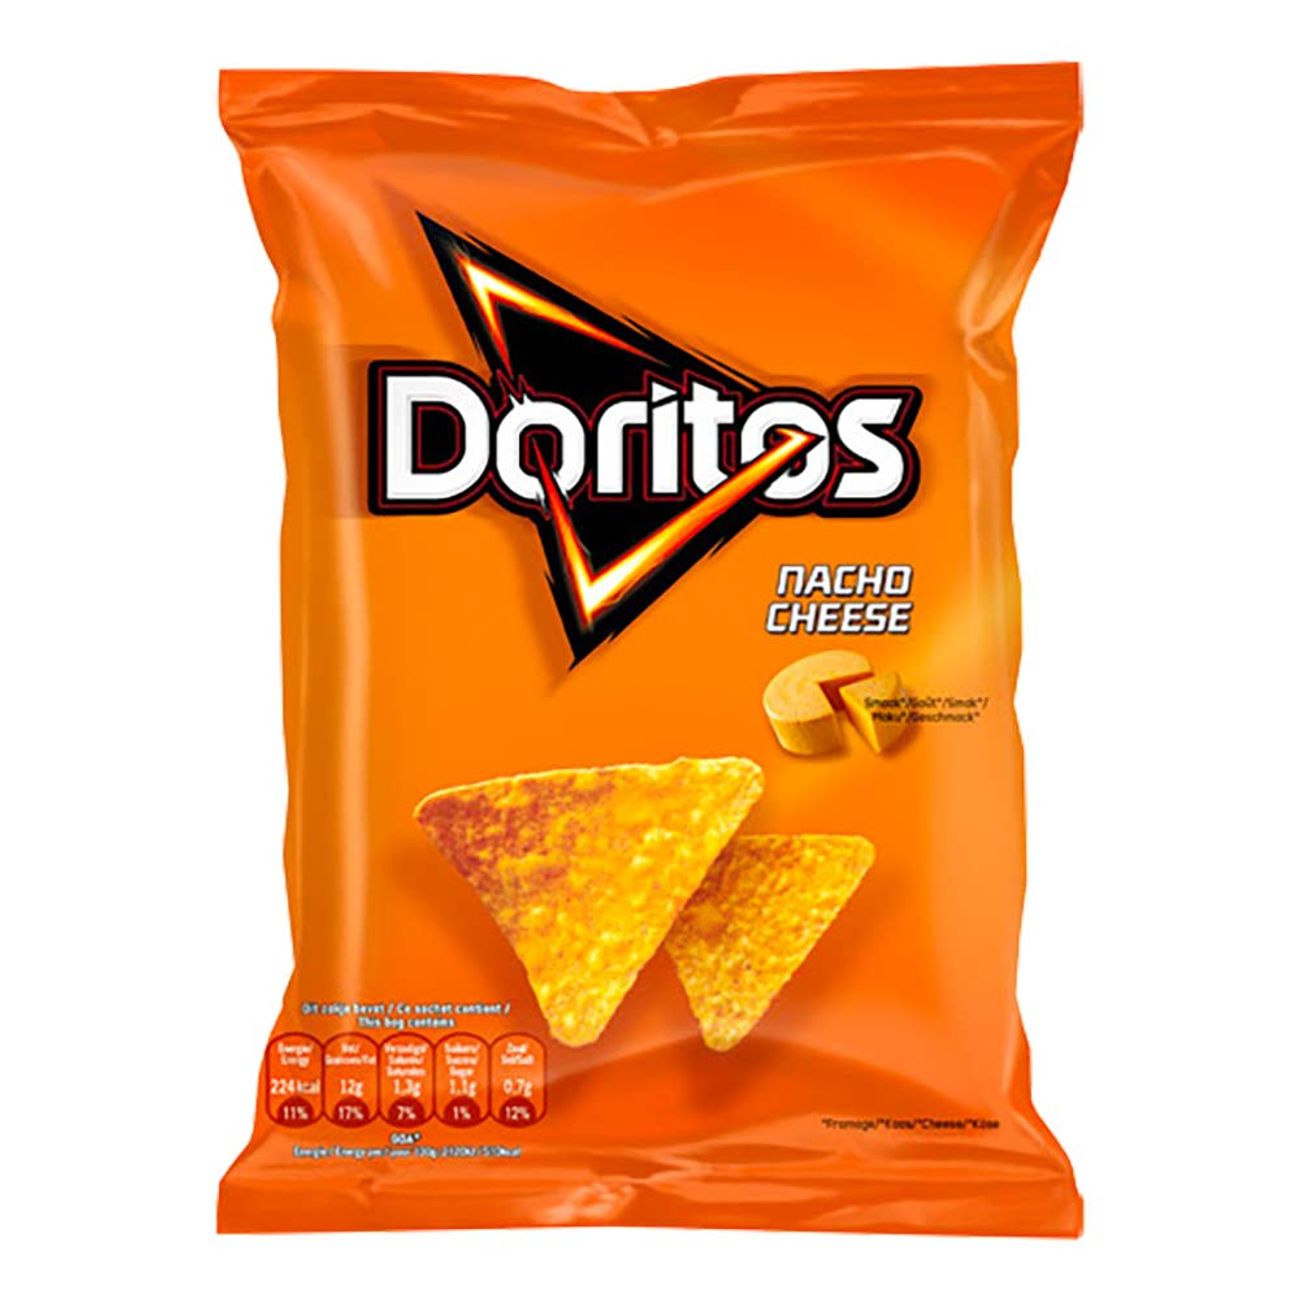 doritos-nacho-cheese-97695-2